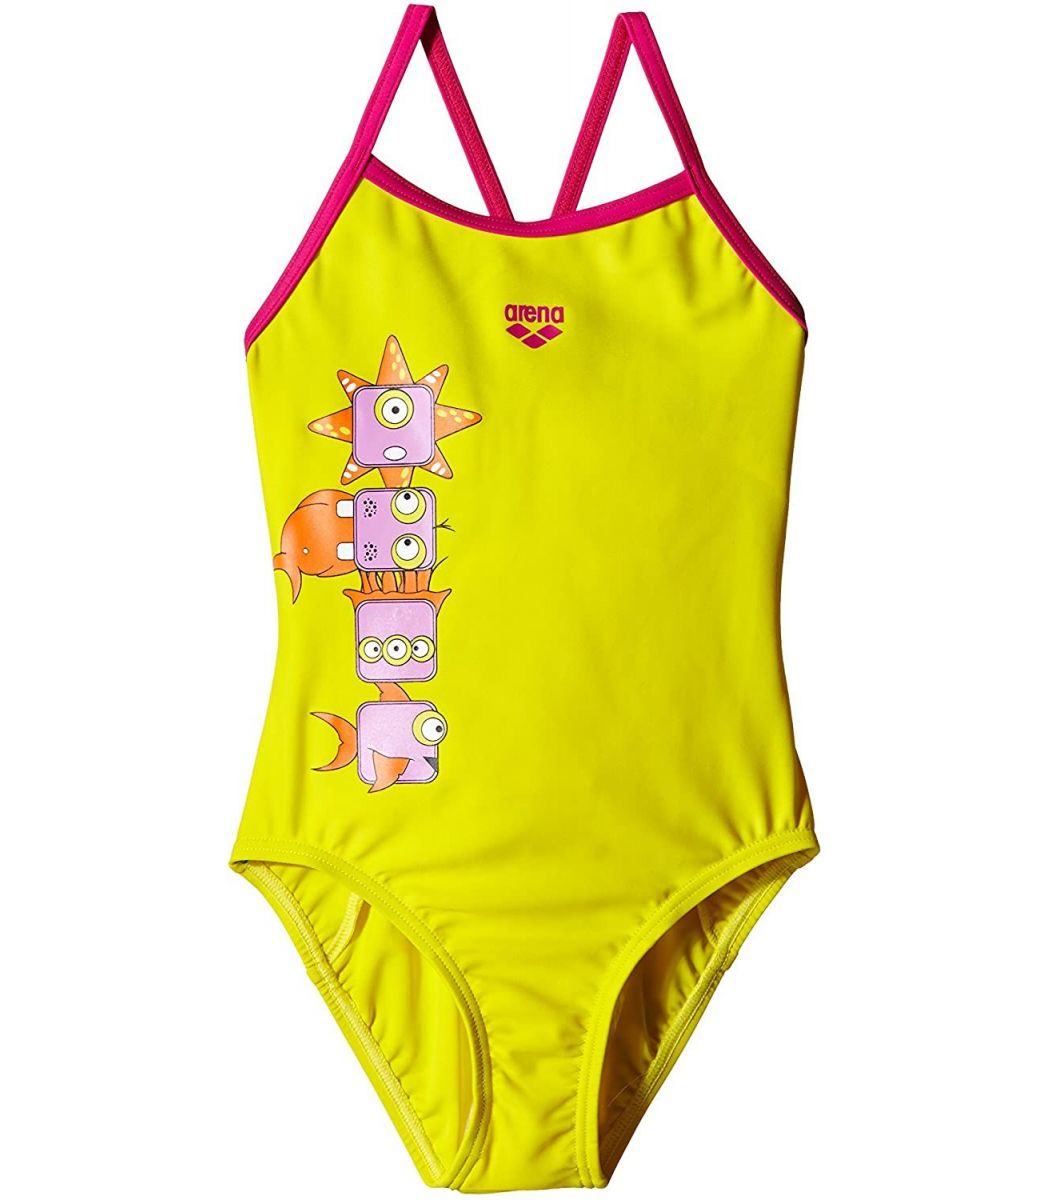  Μαγιό Arena Arena Girl Swimwear KG Gill Kids One Piece 1A48739-1